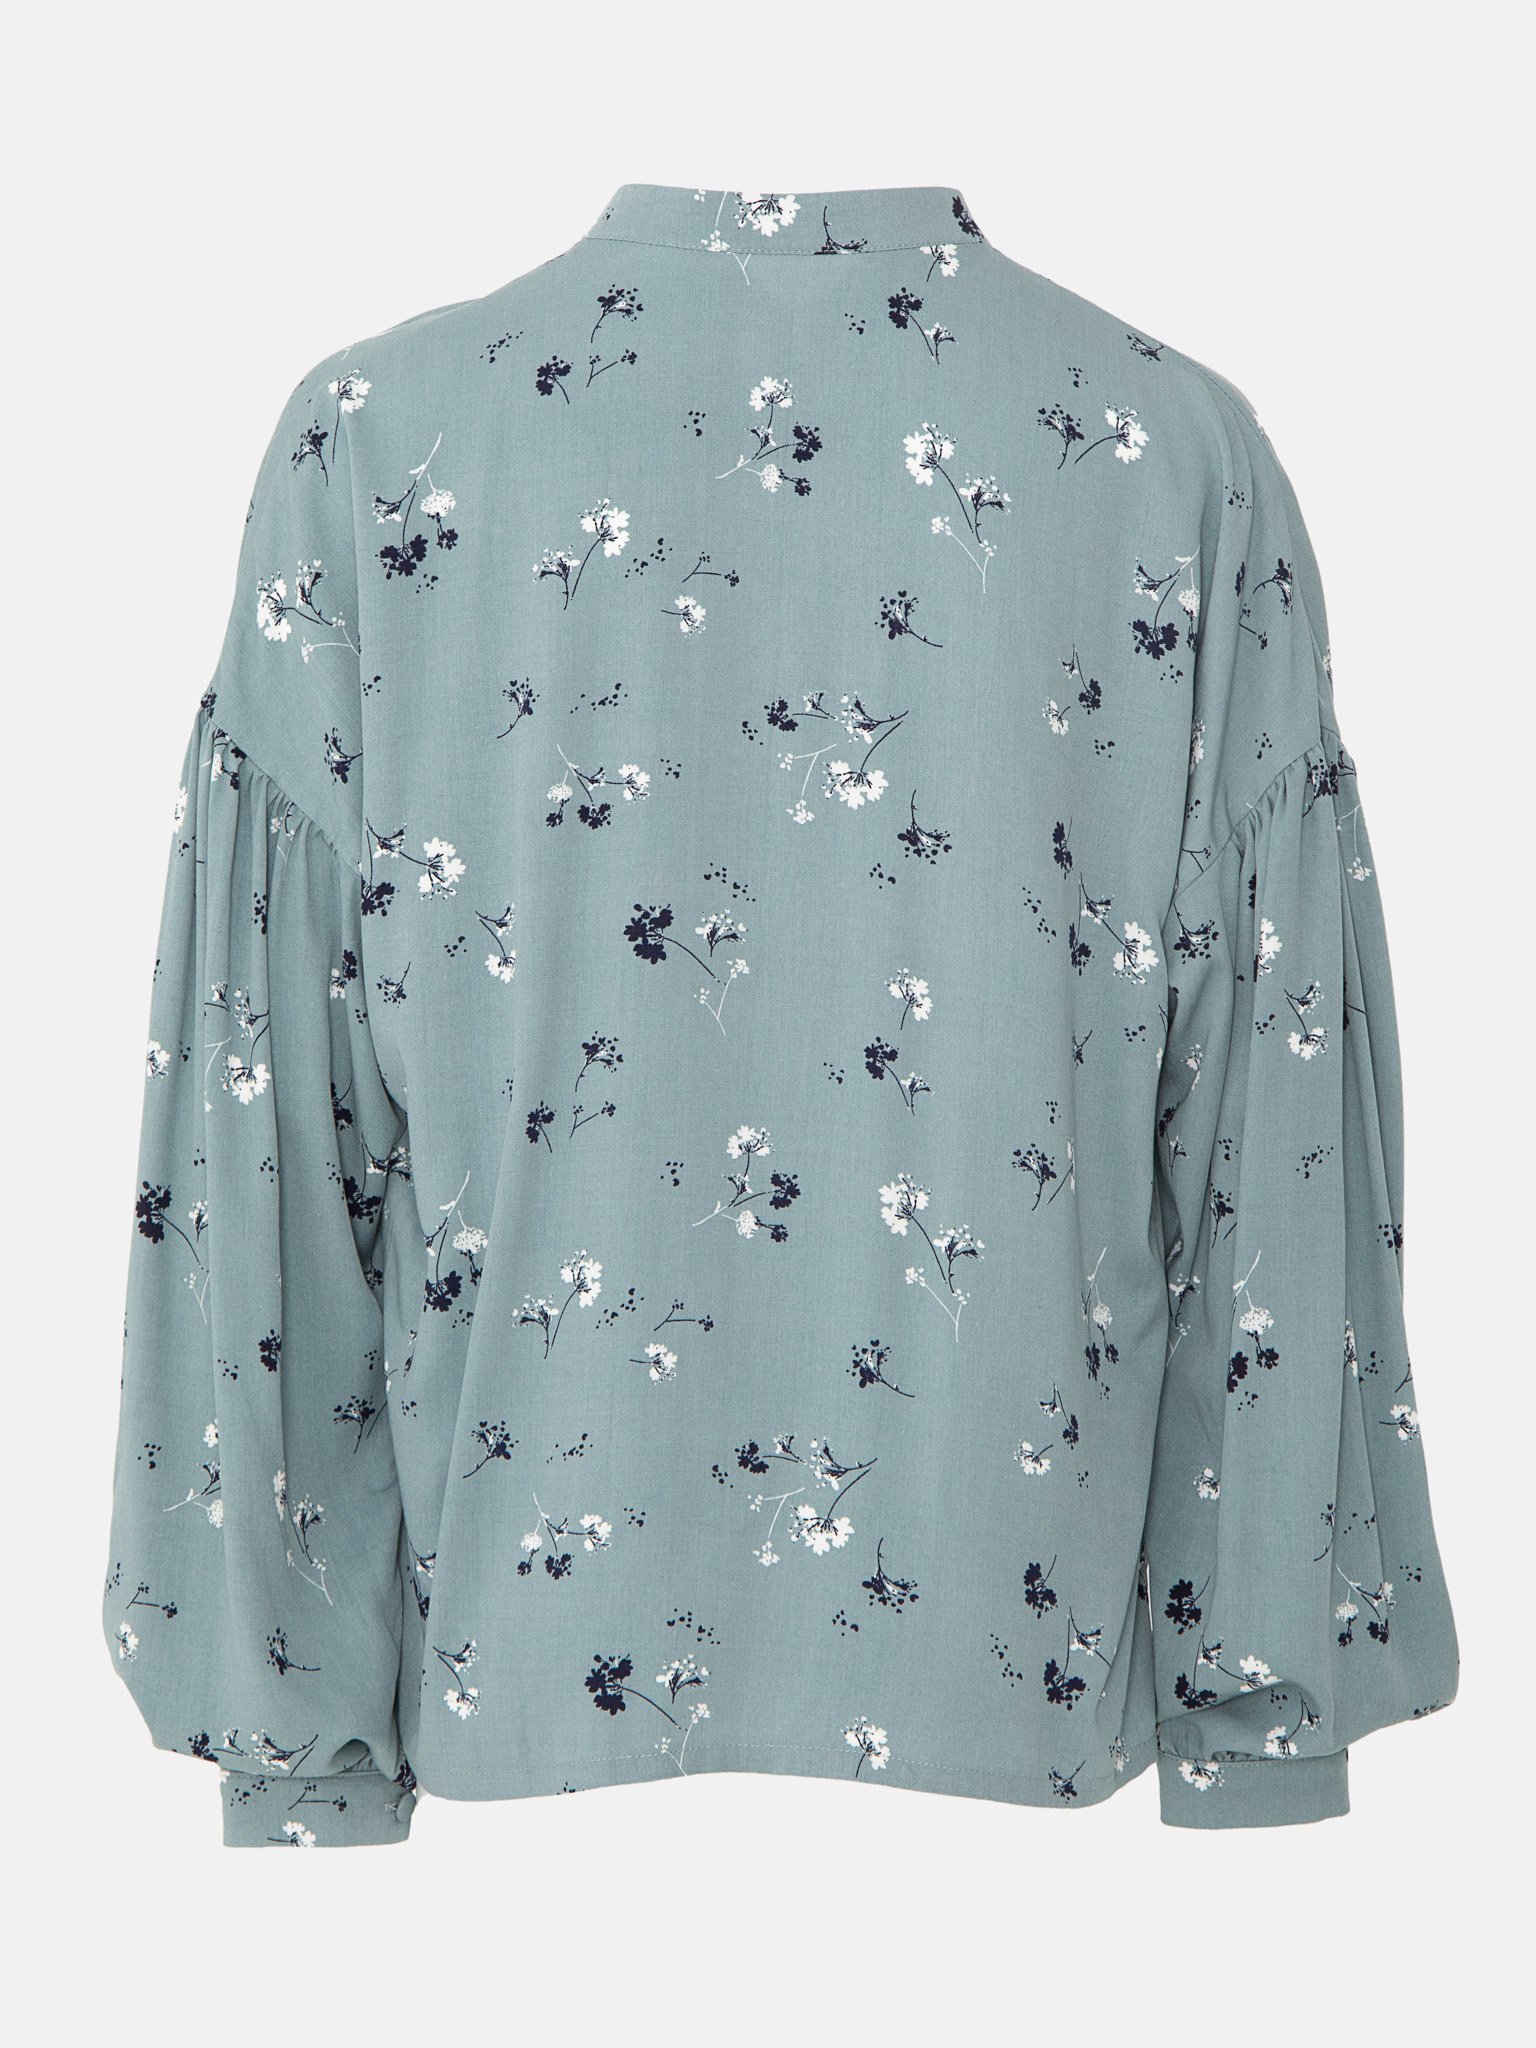 Свободная блузка с цветочным принтом